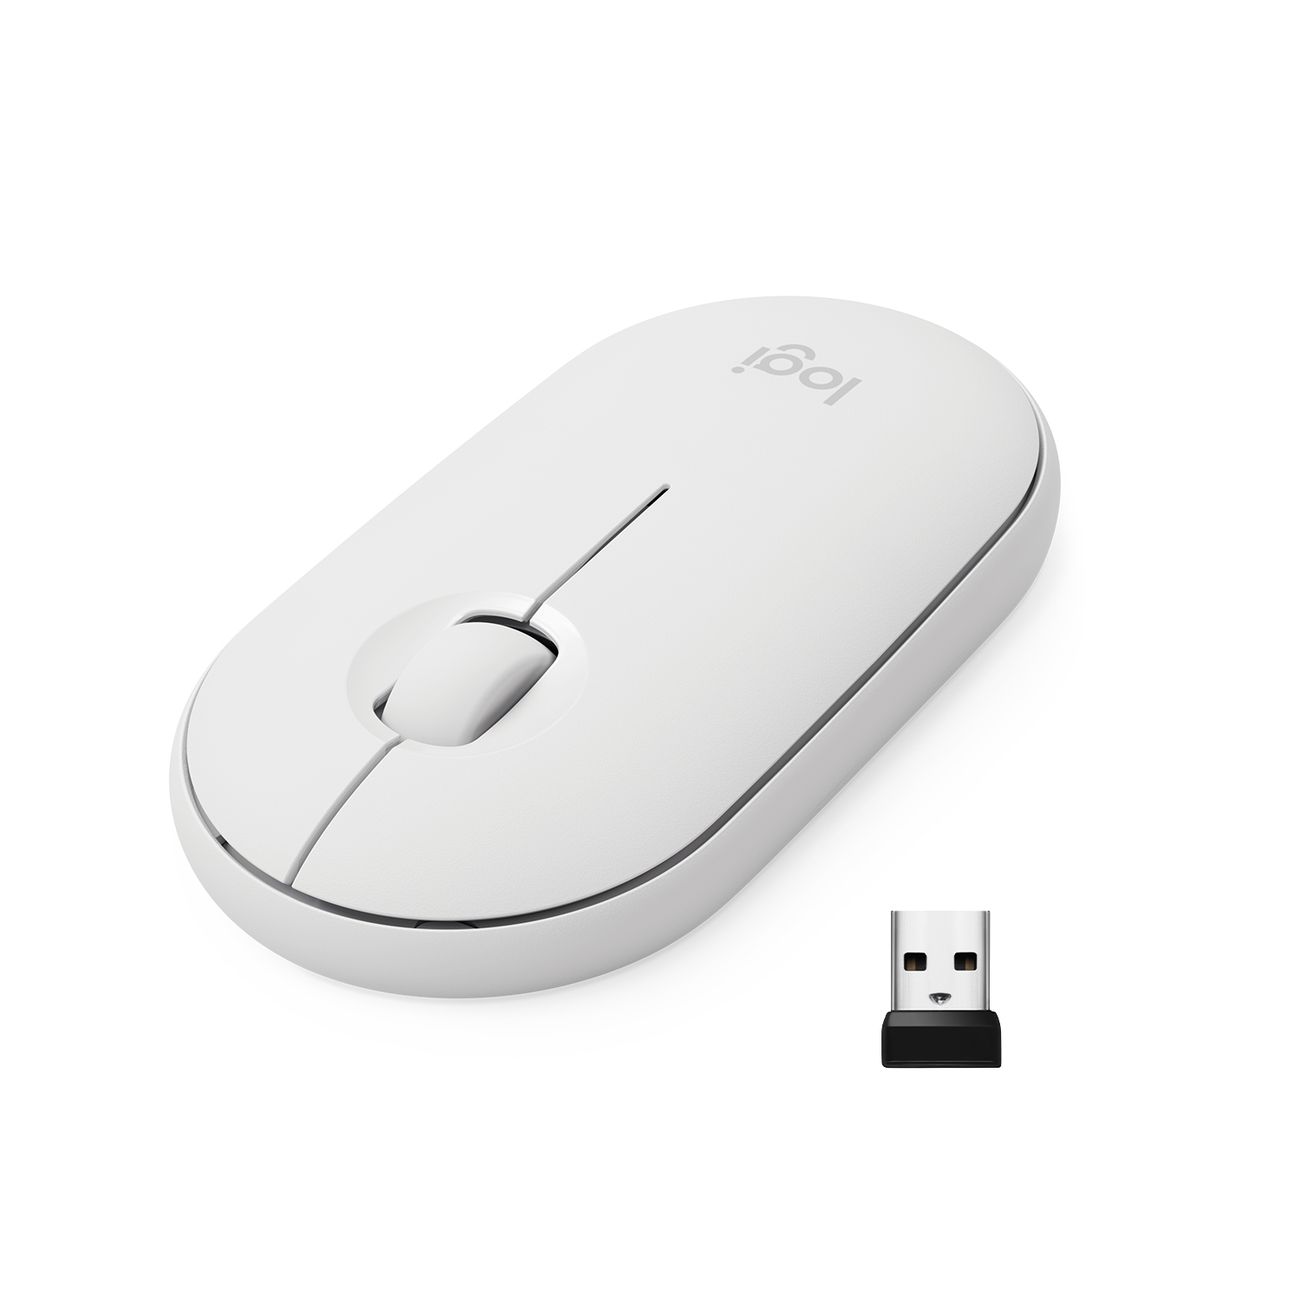 Мышь беспроводная Logitech M350 Pebble Mouse, white (910-005716) компьютерная мышь logitech pebble m350 white 910 005541